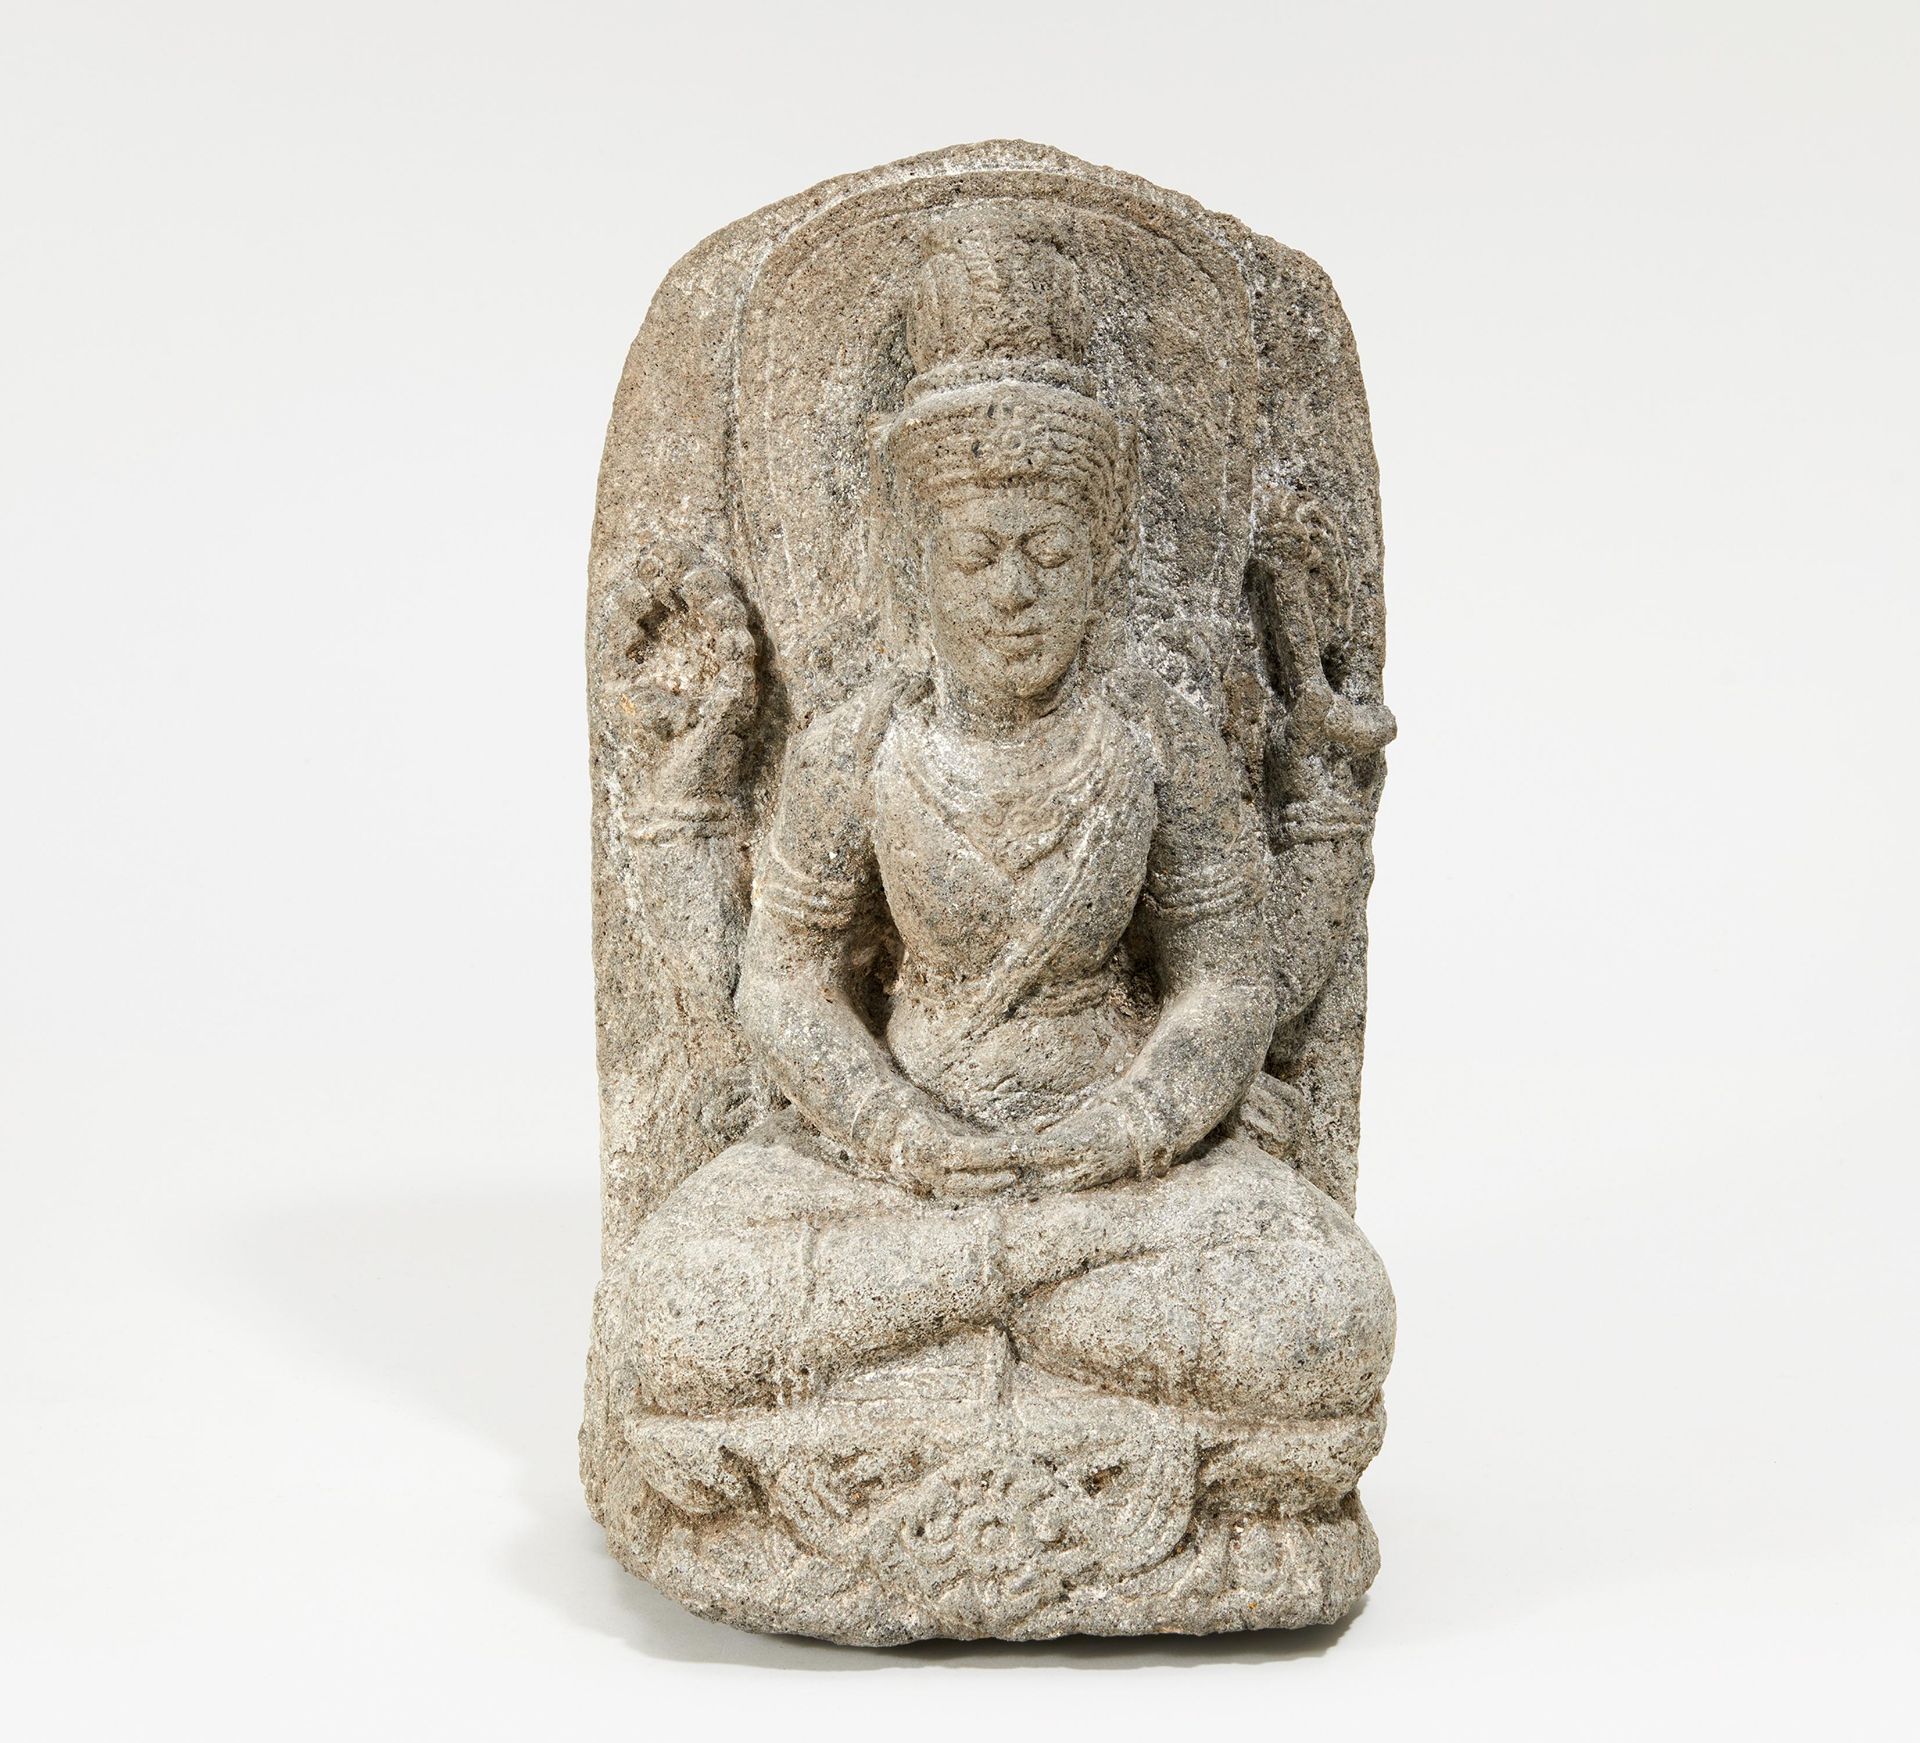 VIERARMIGER VISHNU. Indien. Im Stil der Chola-Periode, aber evtl. später. Granit. H. 37cm. Zustand